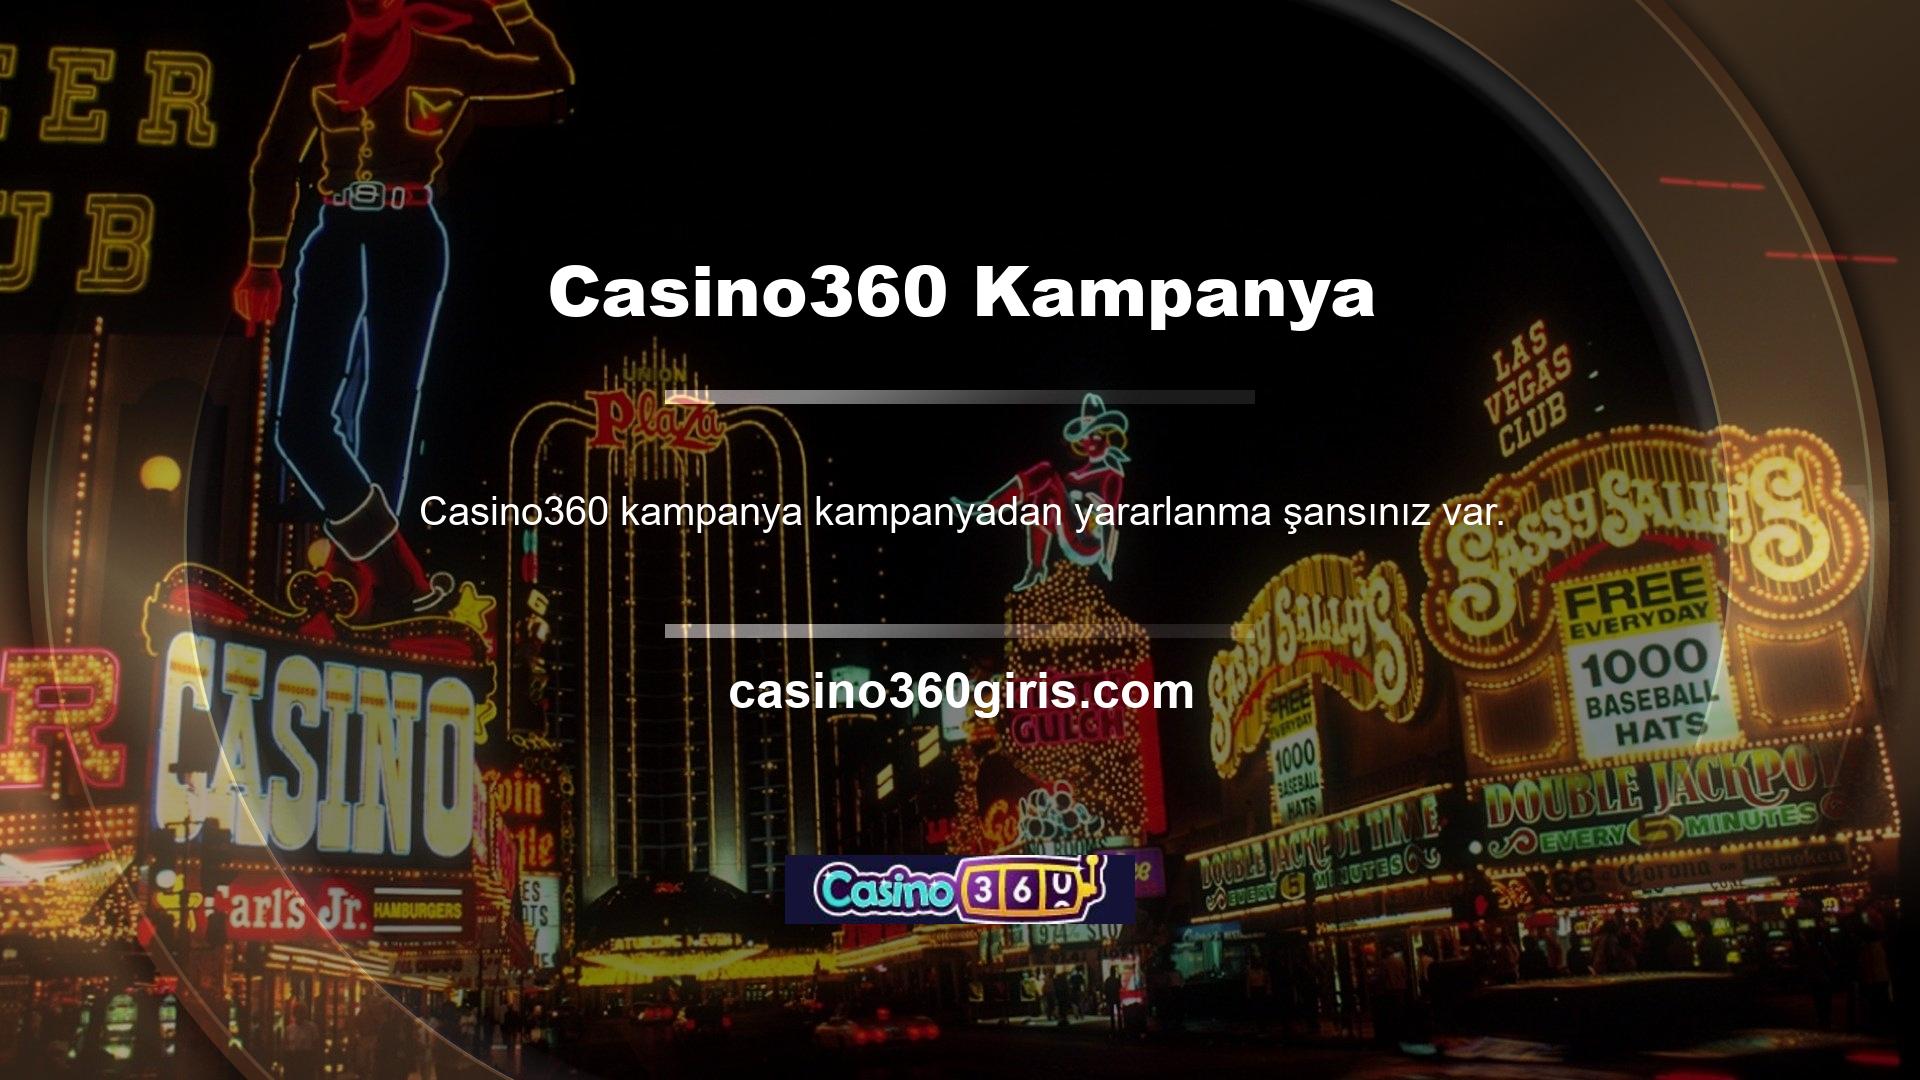 Başlangıç yatırımını değerlendirmek isteyen oyunculara casino hoş geldin bonusu sunulmaktadır